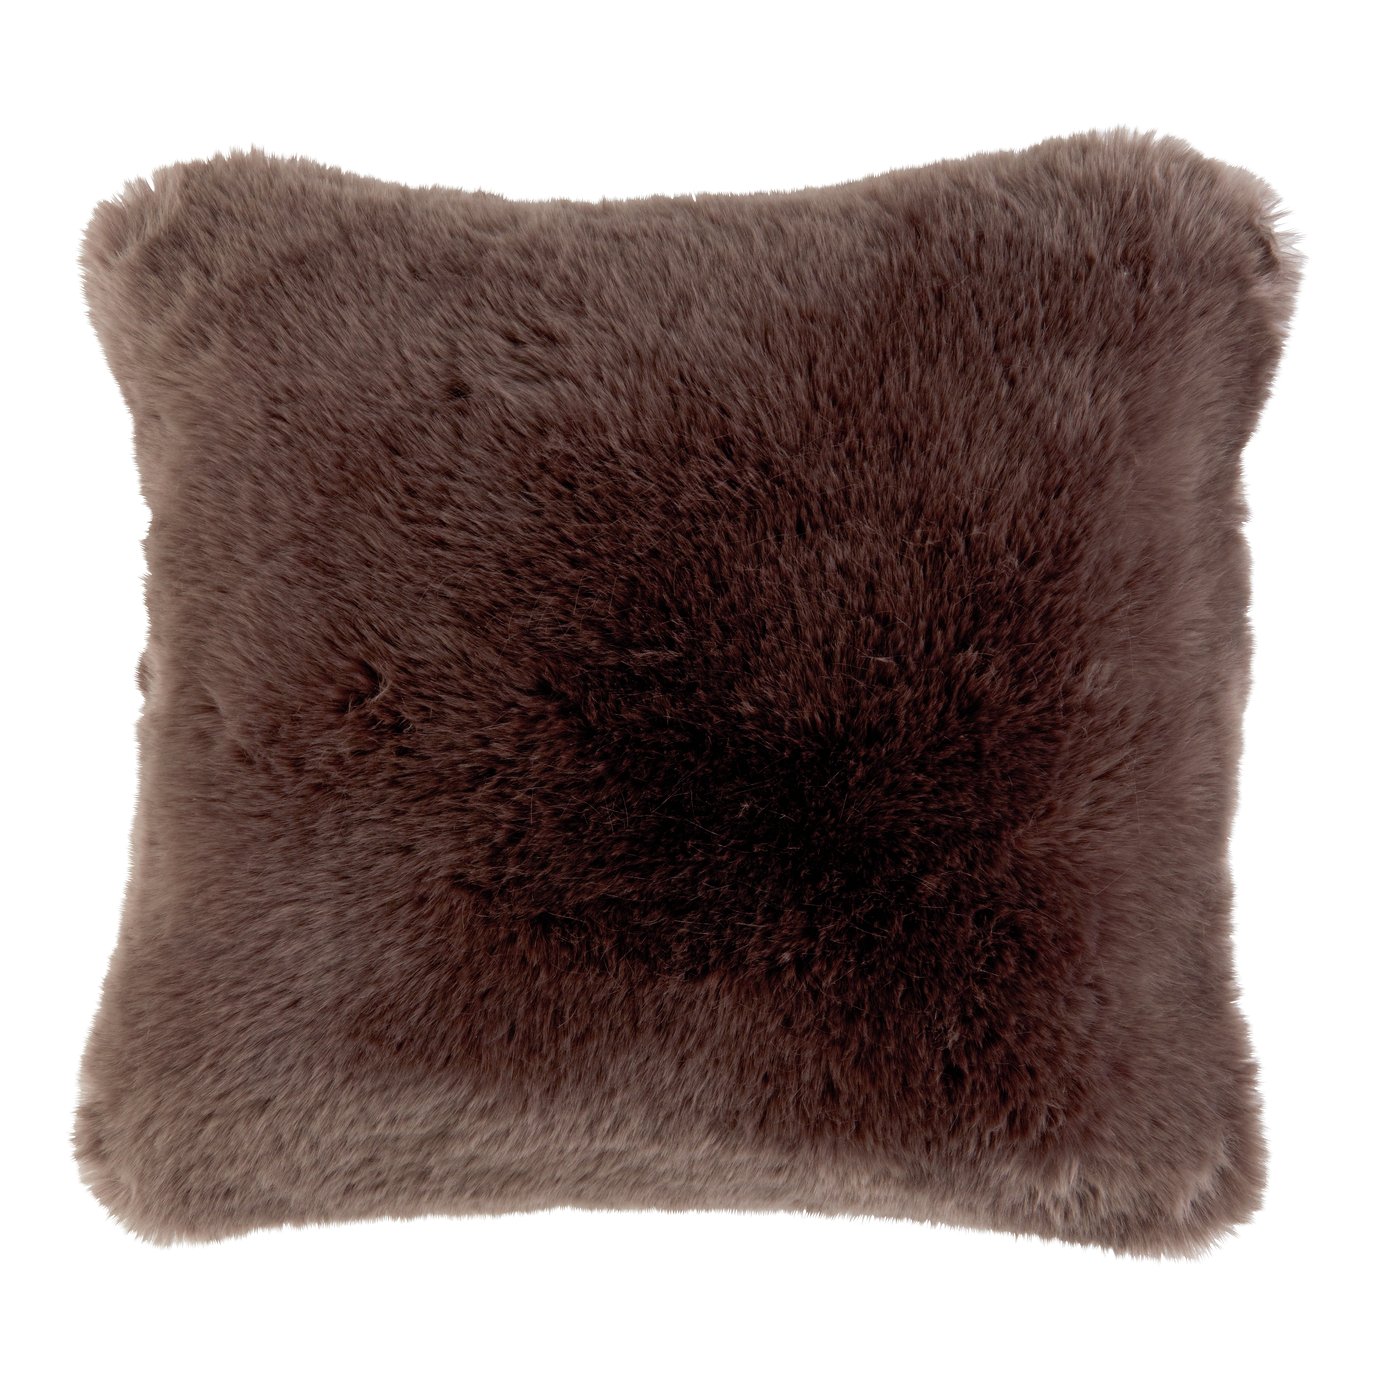 Argos Home Premium Faux Fur Cushion - Brown